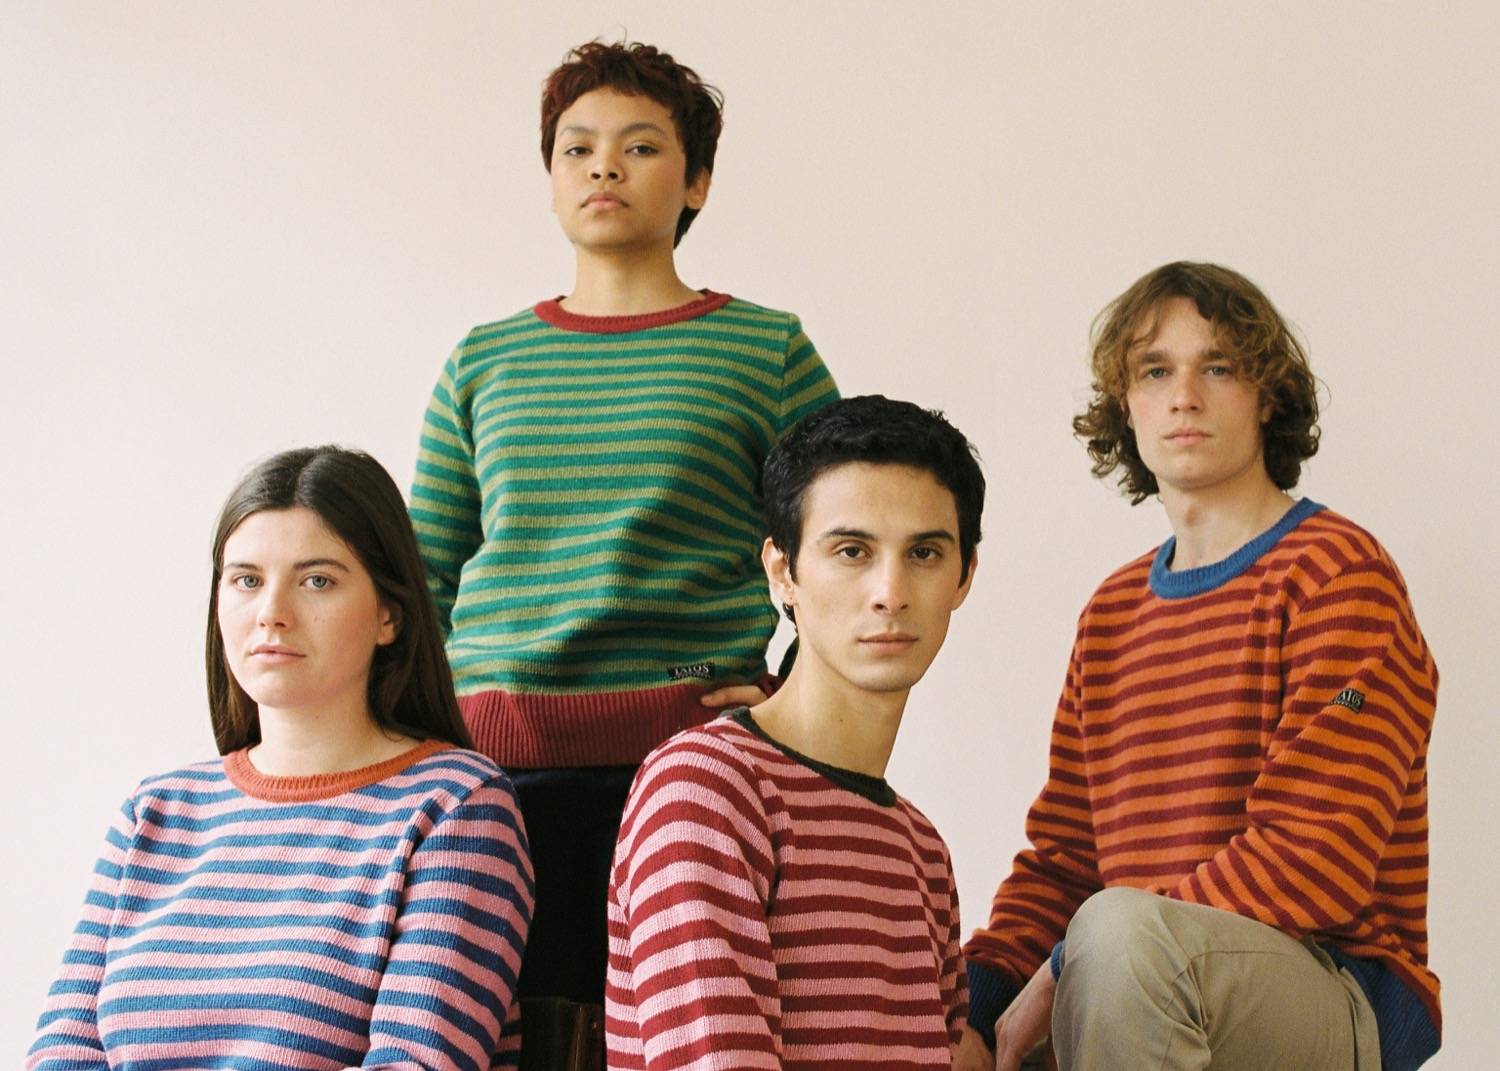 quatre persones amb el mateix jersei però en diferents colors assegudes mirant a la càmera